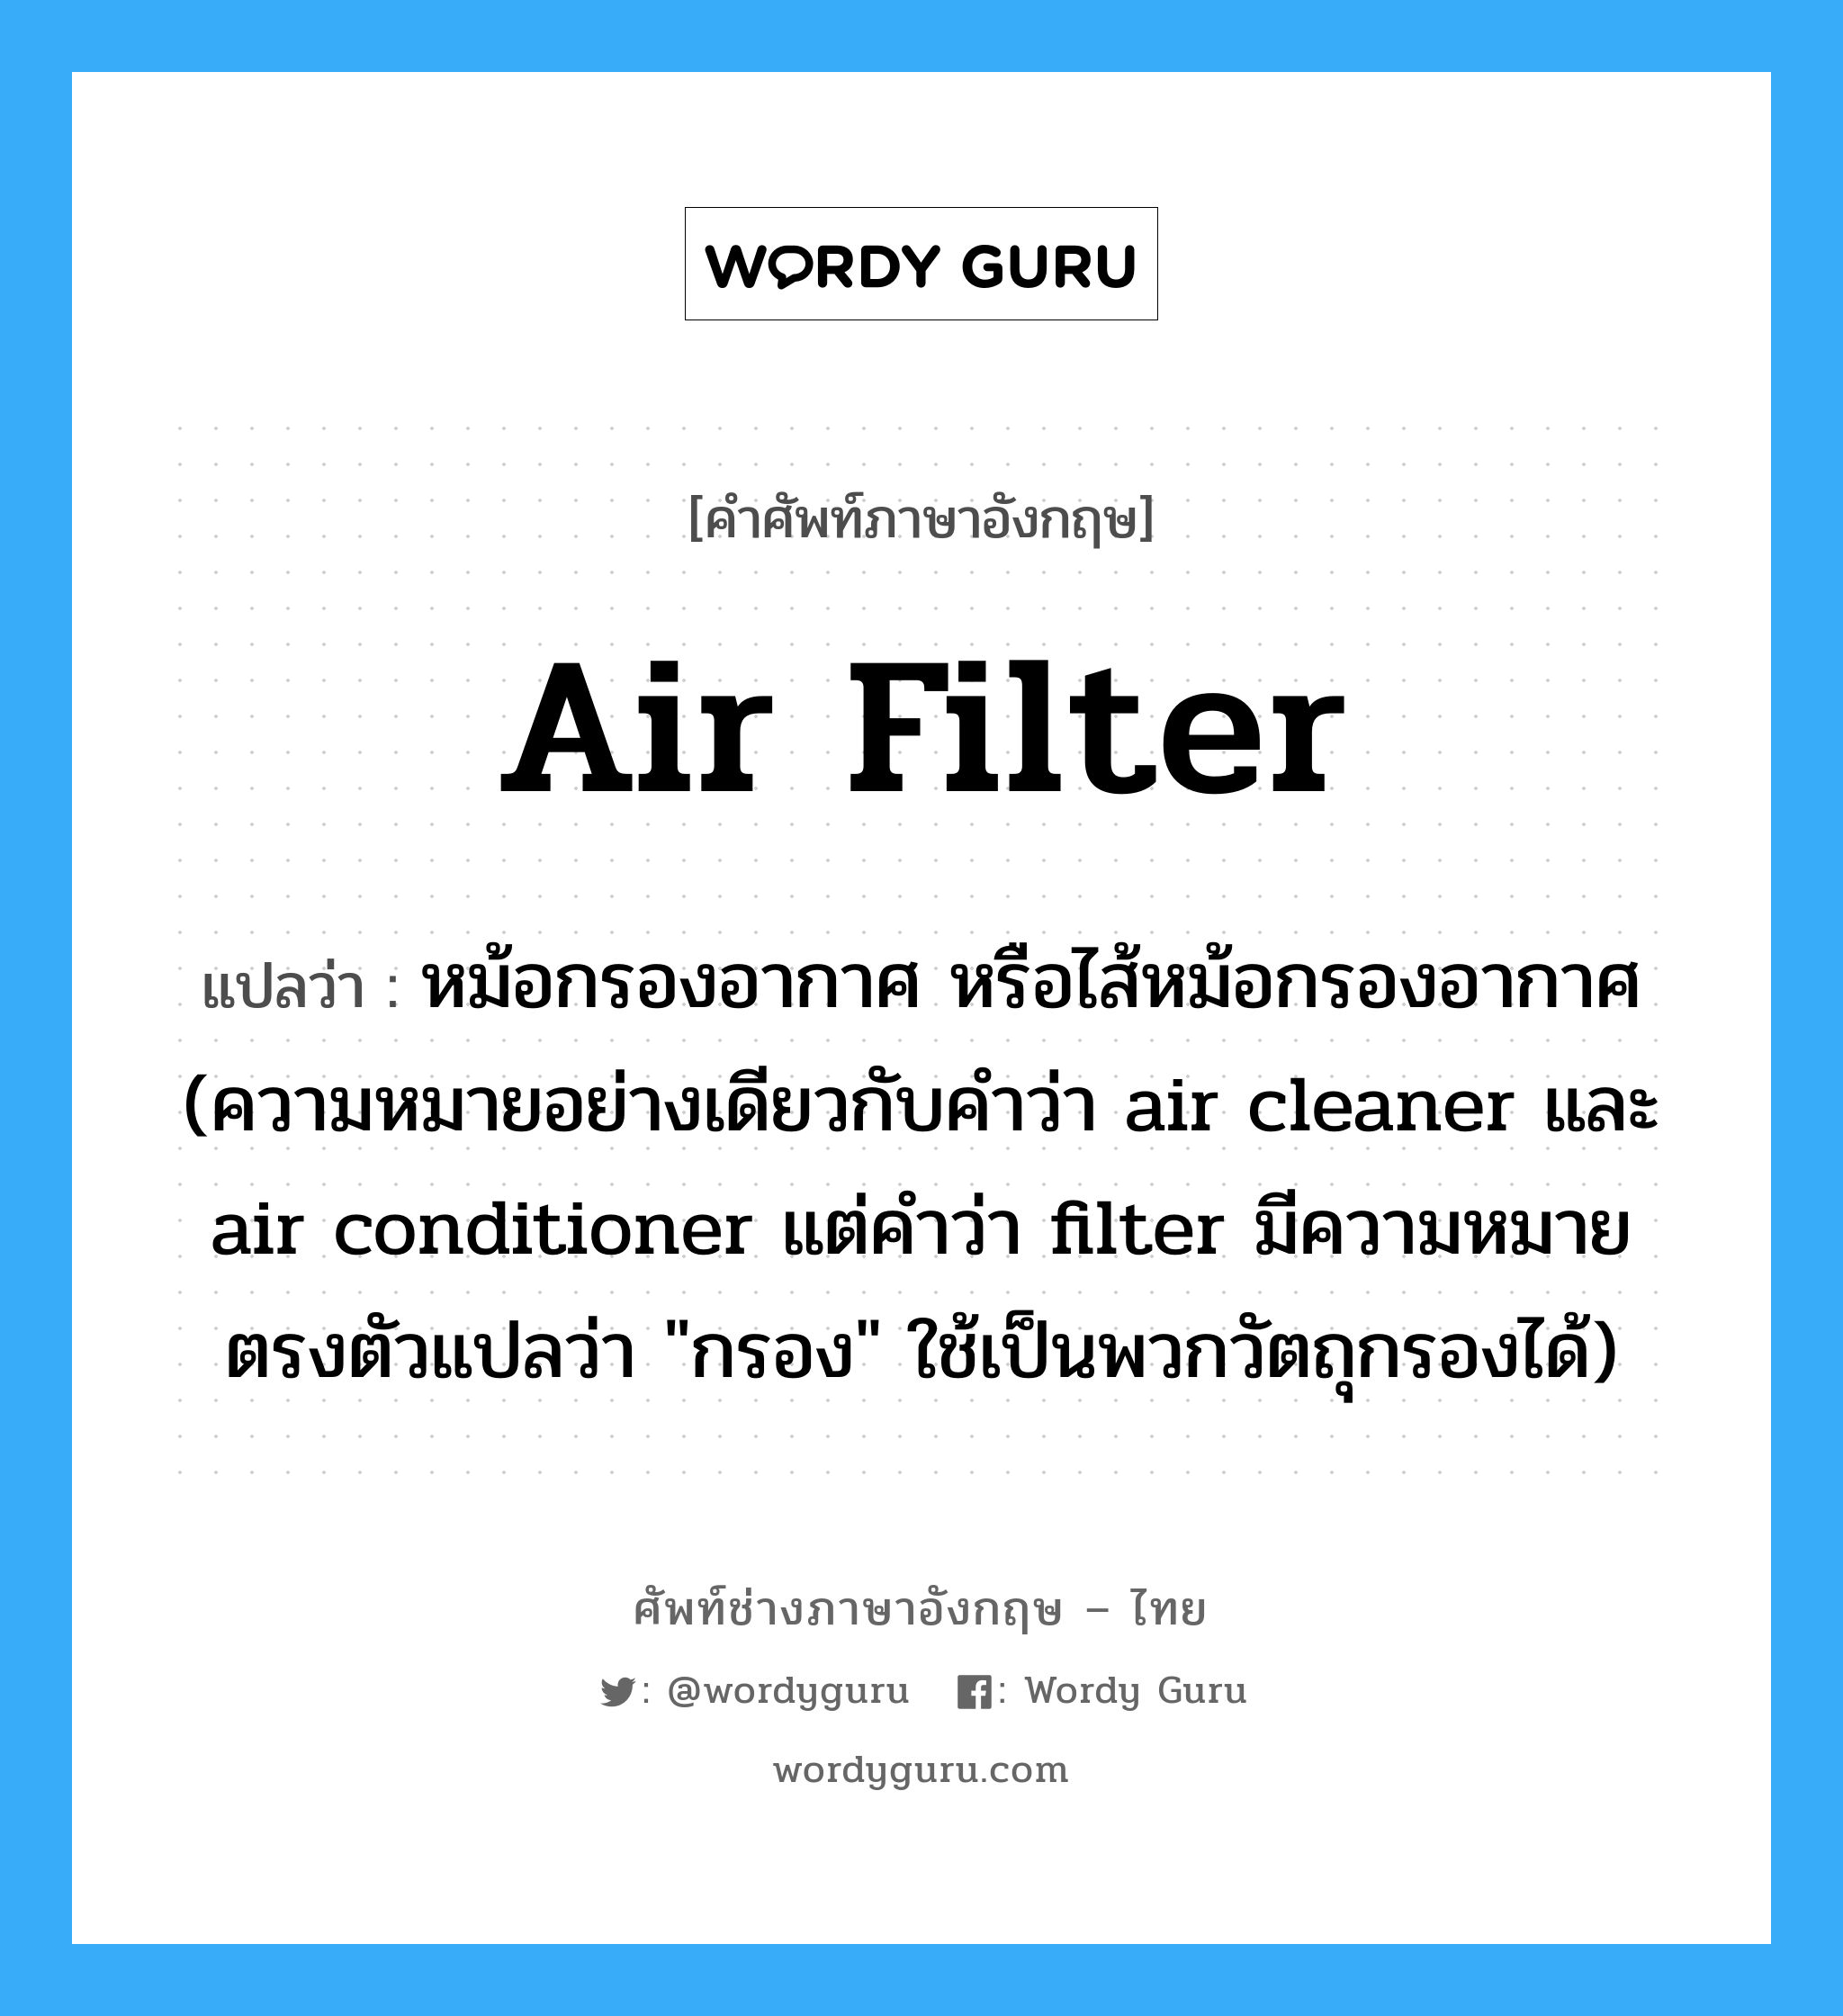 หม้อกรองอากาศ หรือไส้หม้อกรองอากาศ (ความหมายอย่างเดียวกับคำว่า air cleaner และ air conditioner แต่คำว่า filter มีความหมายตรงตัวแปลว่า "กรอง" ใช้เป็นพวกวัตถุกรองได้) ภาษาอังกฤษ?, คำศัพท์ช่างภาษาอังกฤษ - ไทย หม้อกรองอากาศ หรือไส้หม้อกรองอากาศ (ความหมายอย่างเดียวกับคำว่า air cleaner และ air conditioner แต่คำว่า filter มีความหมายตรงตัวแปลว่า "กรอง" ใช้เป็นพวกวัตถุกรองได้) คำศัพท์ภาษาอังกฤษ หม้อกรองอากาศ หรือไส้หม้อกรองอากาศ (ความหมายอย่างเดียวกับคำว่า air cleaner และ air conditioner แต่คำว่า filter มีความหมายตรงตัวแปลว่า "กรอง" ใช้เป็นพวกวัตถุกรองได้) แปลว่า air filter